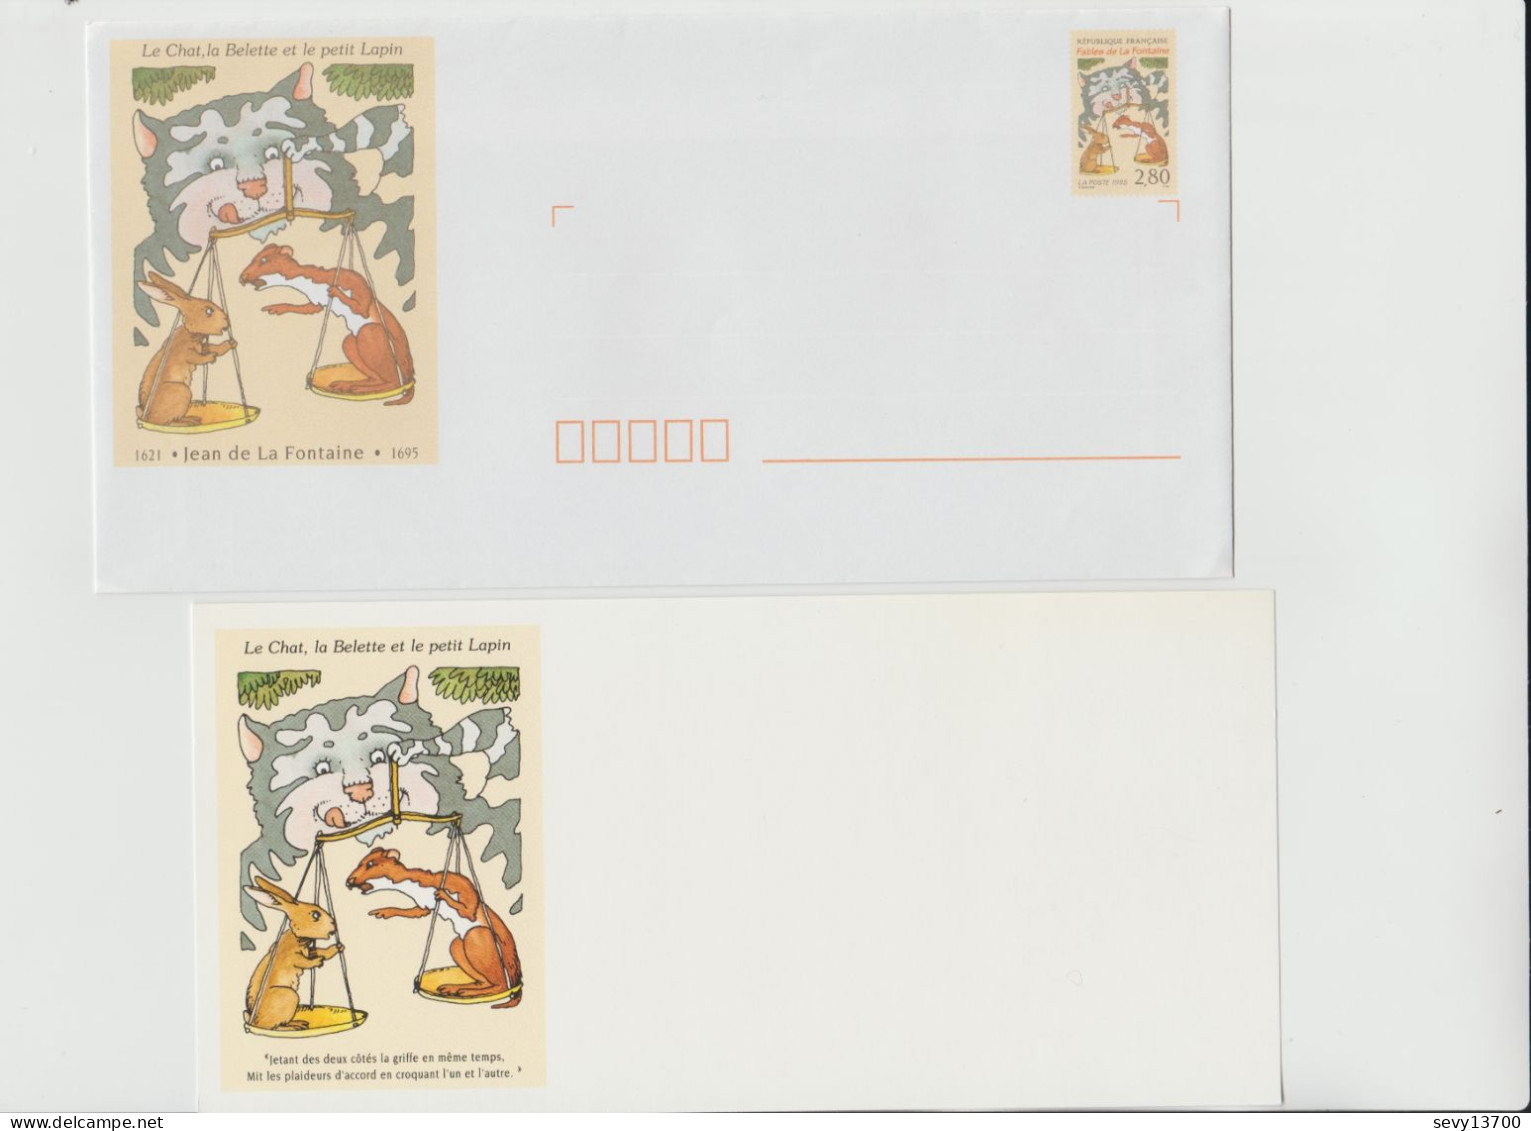 France année 1995 6 enveloppes illustrées prêts à poster et cartes assorties Les Fables de La Fontaine